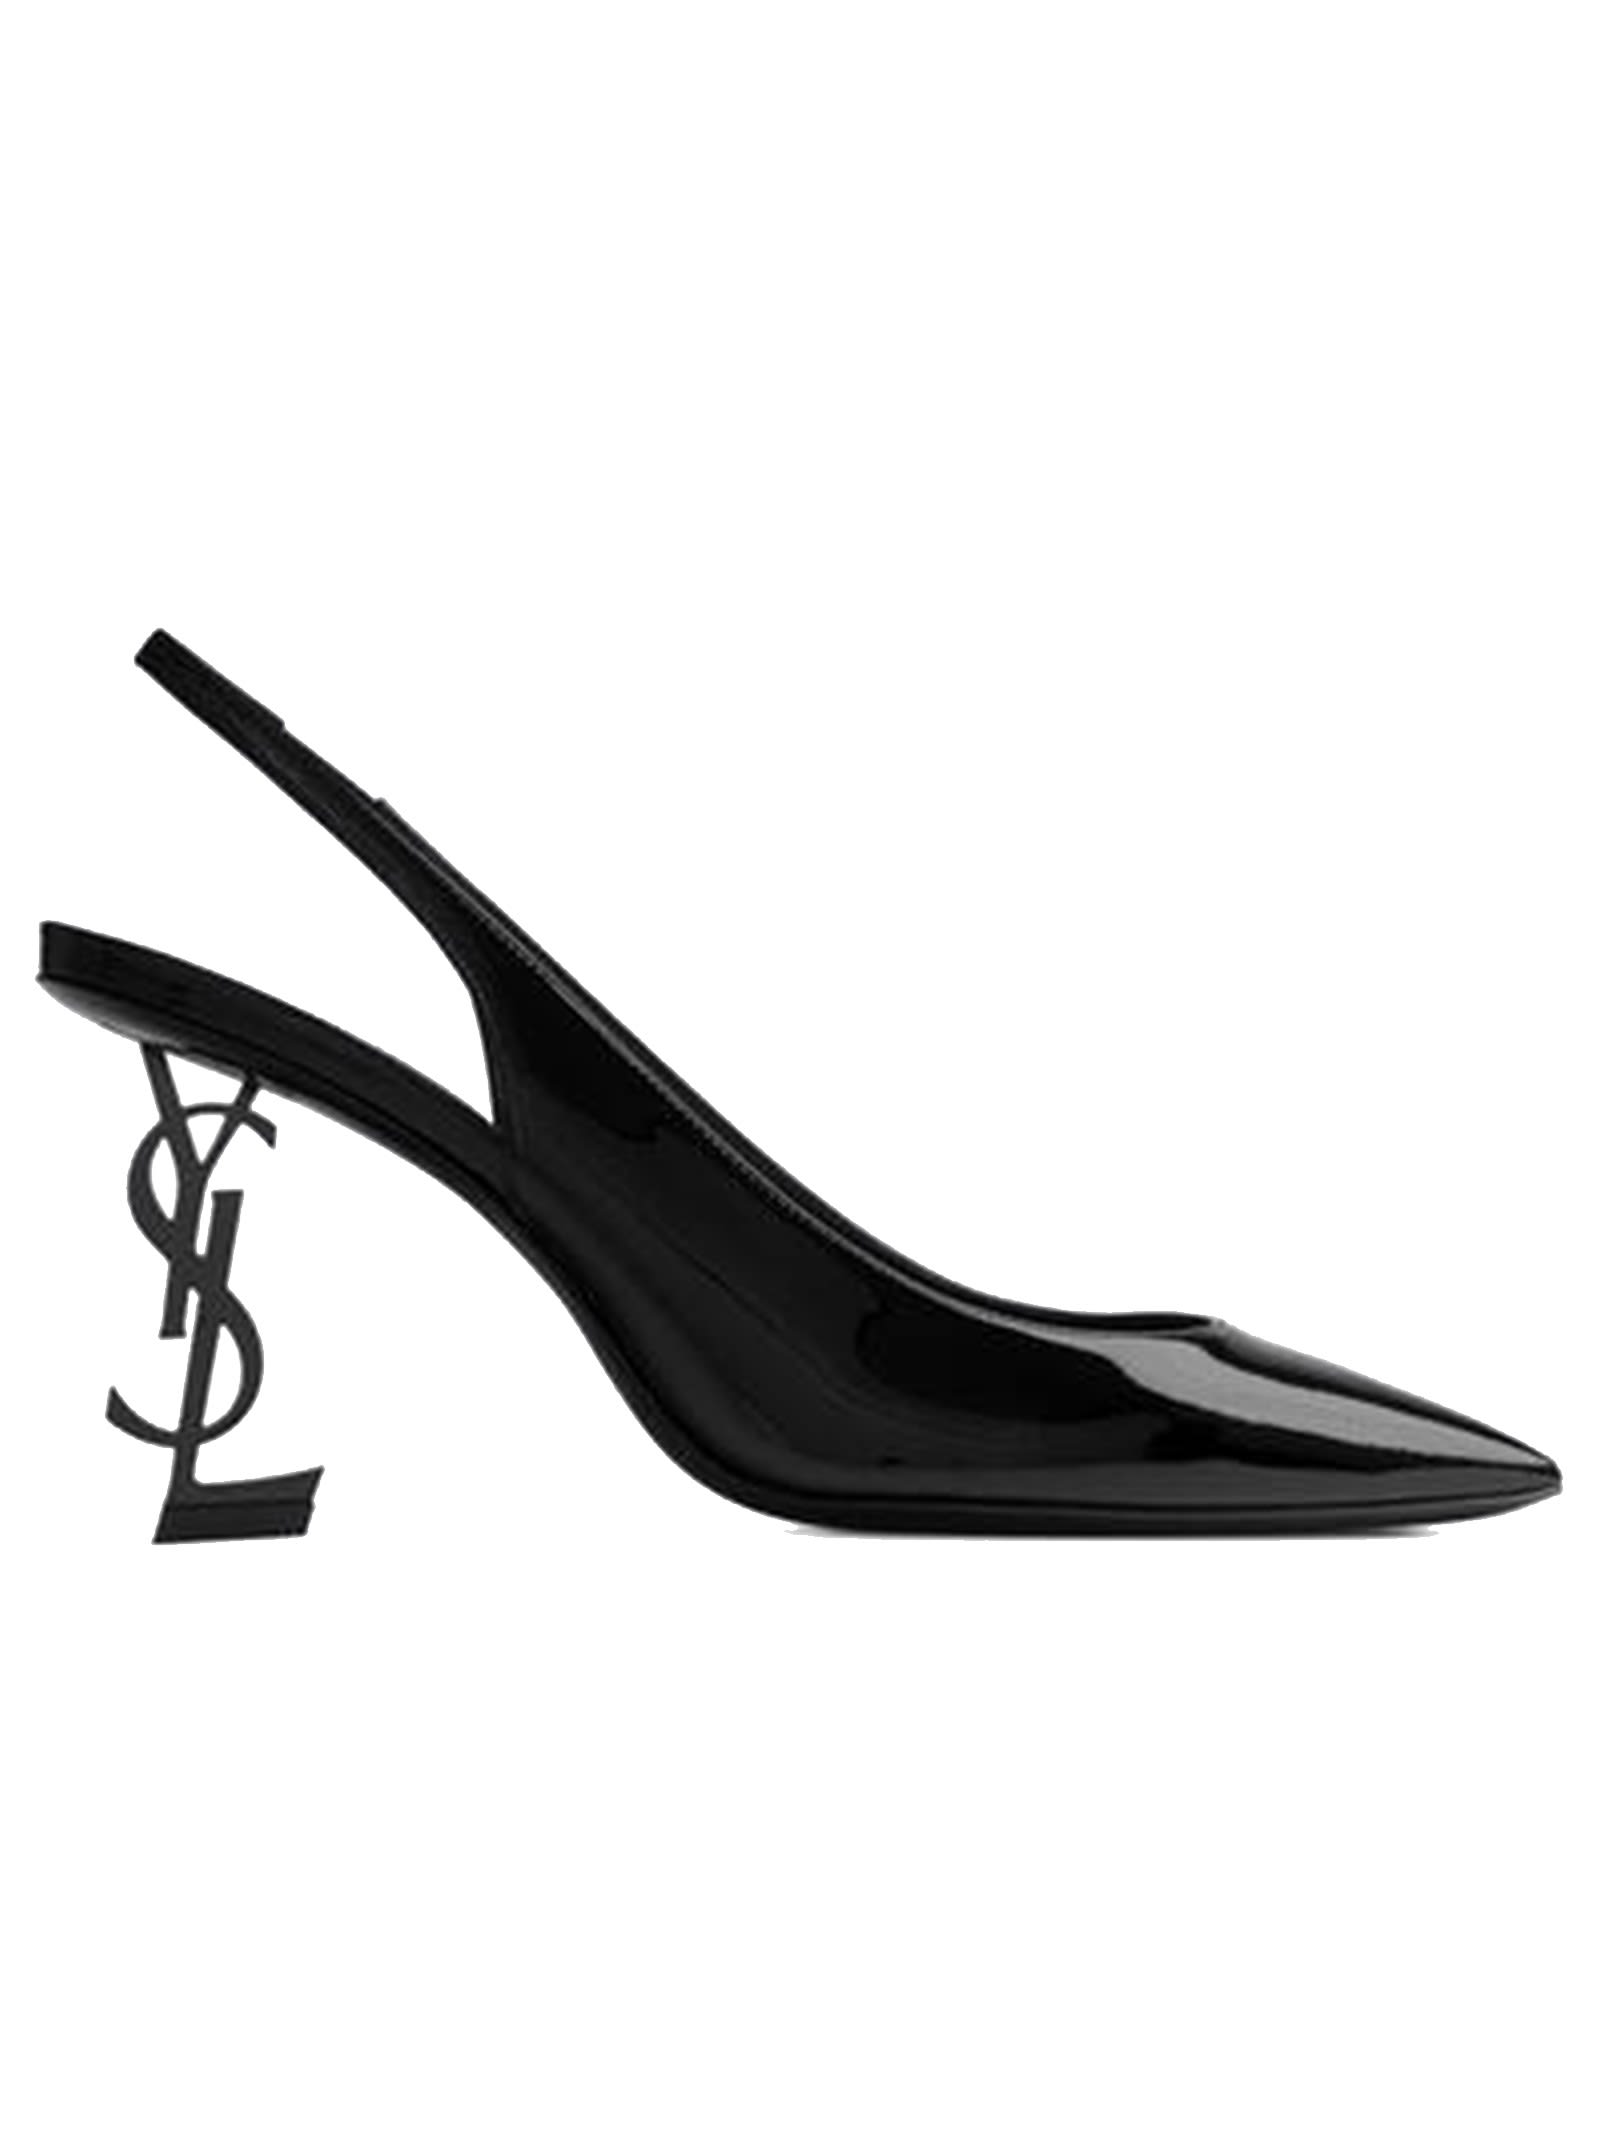 Buy Saint Laurent Black Patent Opyum Slingback Pumps online, shop Saint Laurent shoes with free shipping